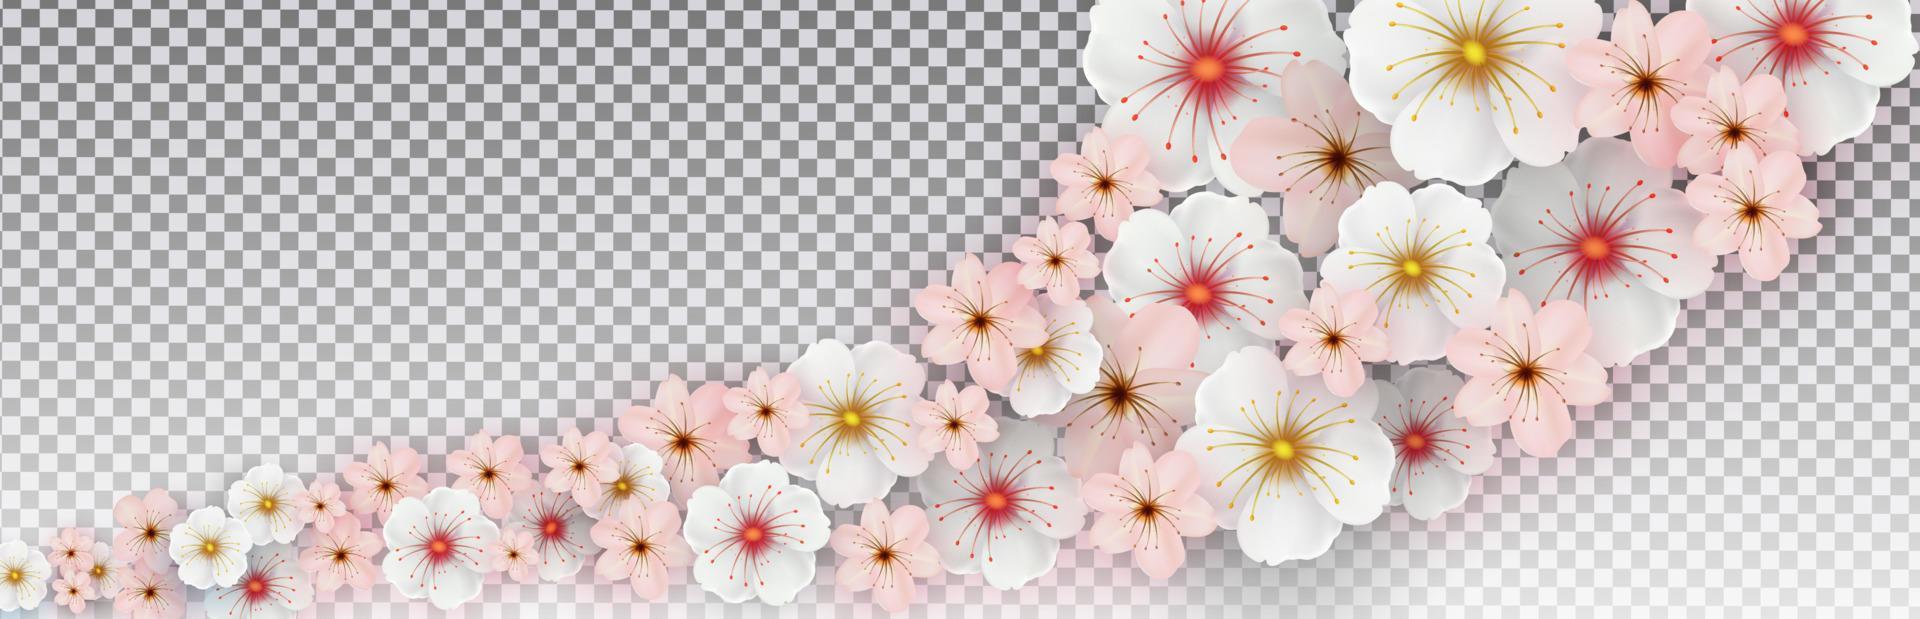 flores de primavera brancas e rosa em um fundo transparente isolado. modelo para banner, pôster, apresentação. ilustração vetorial vetor